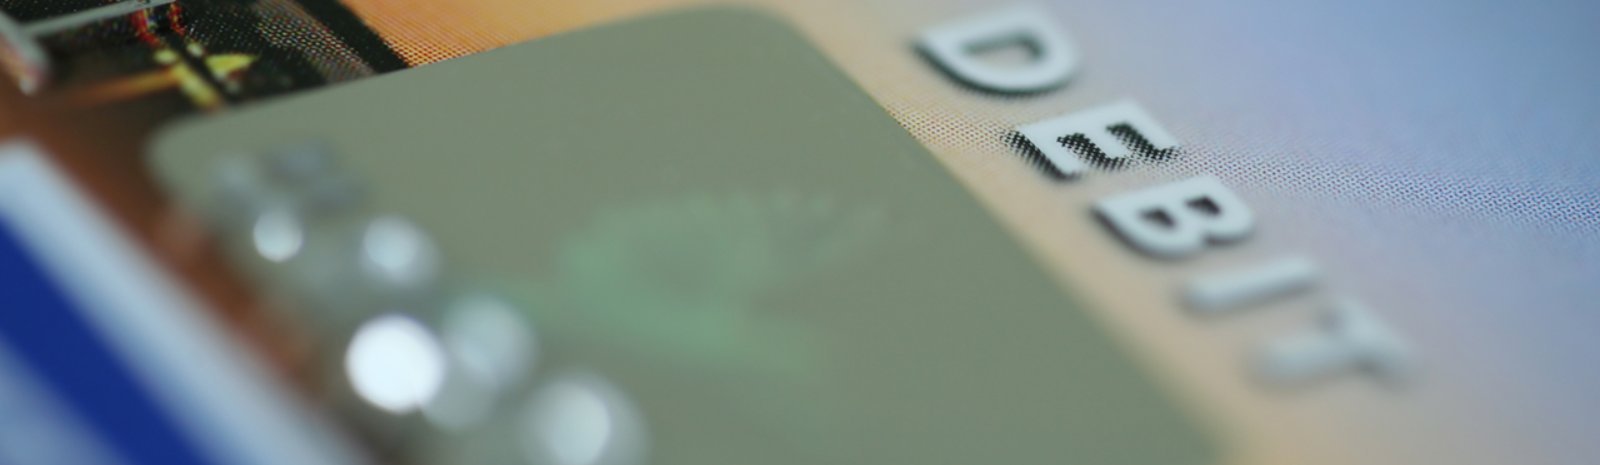 image of the word Debit on a debit card